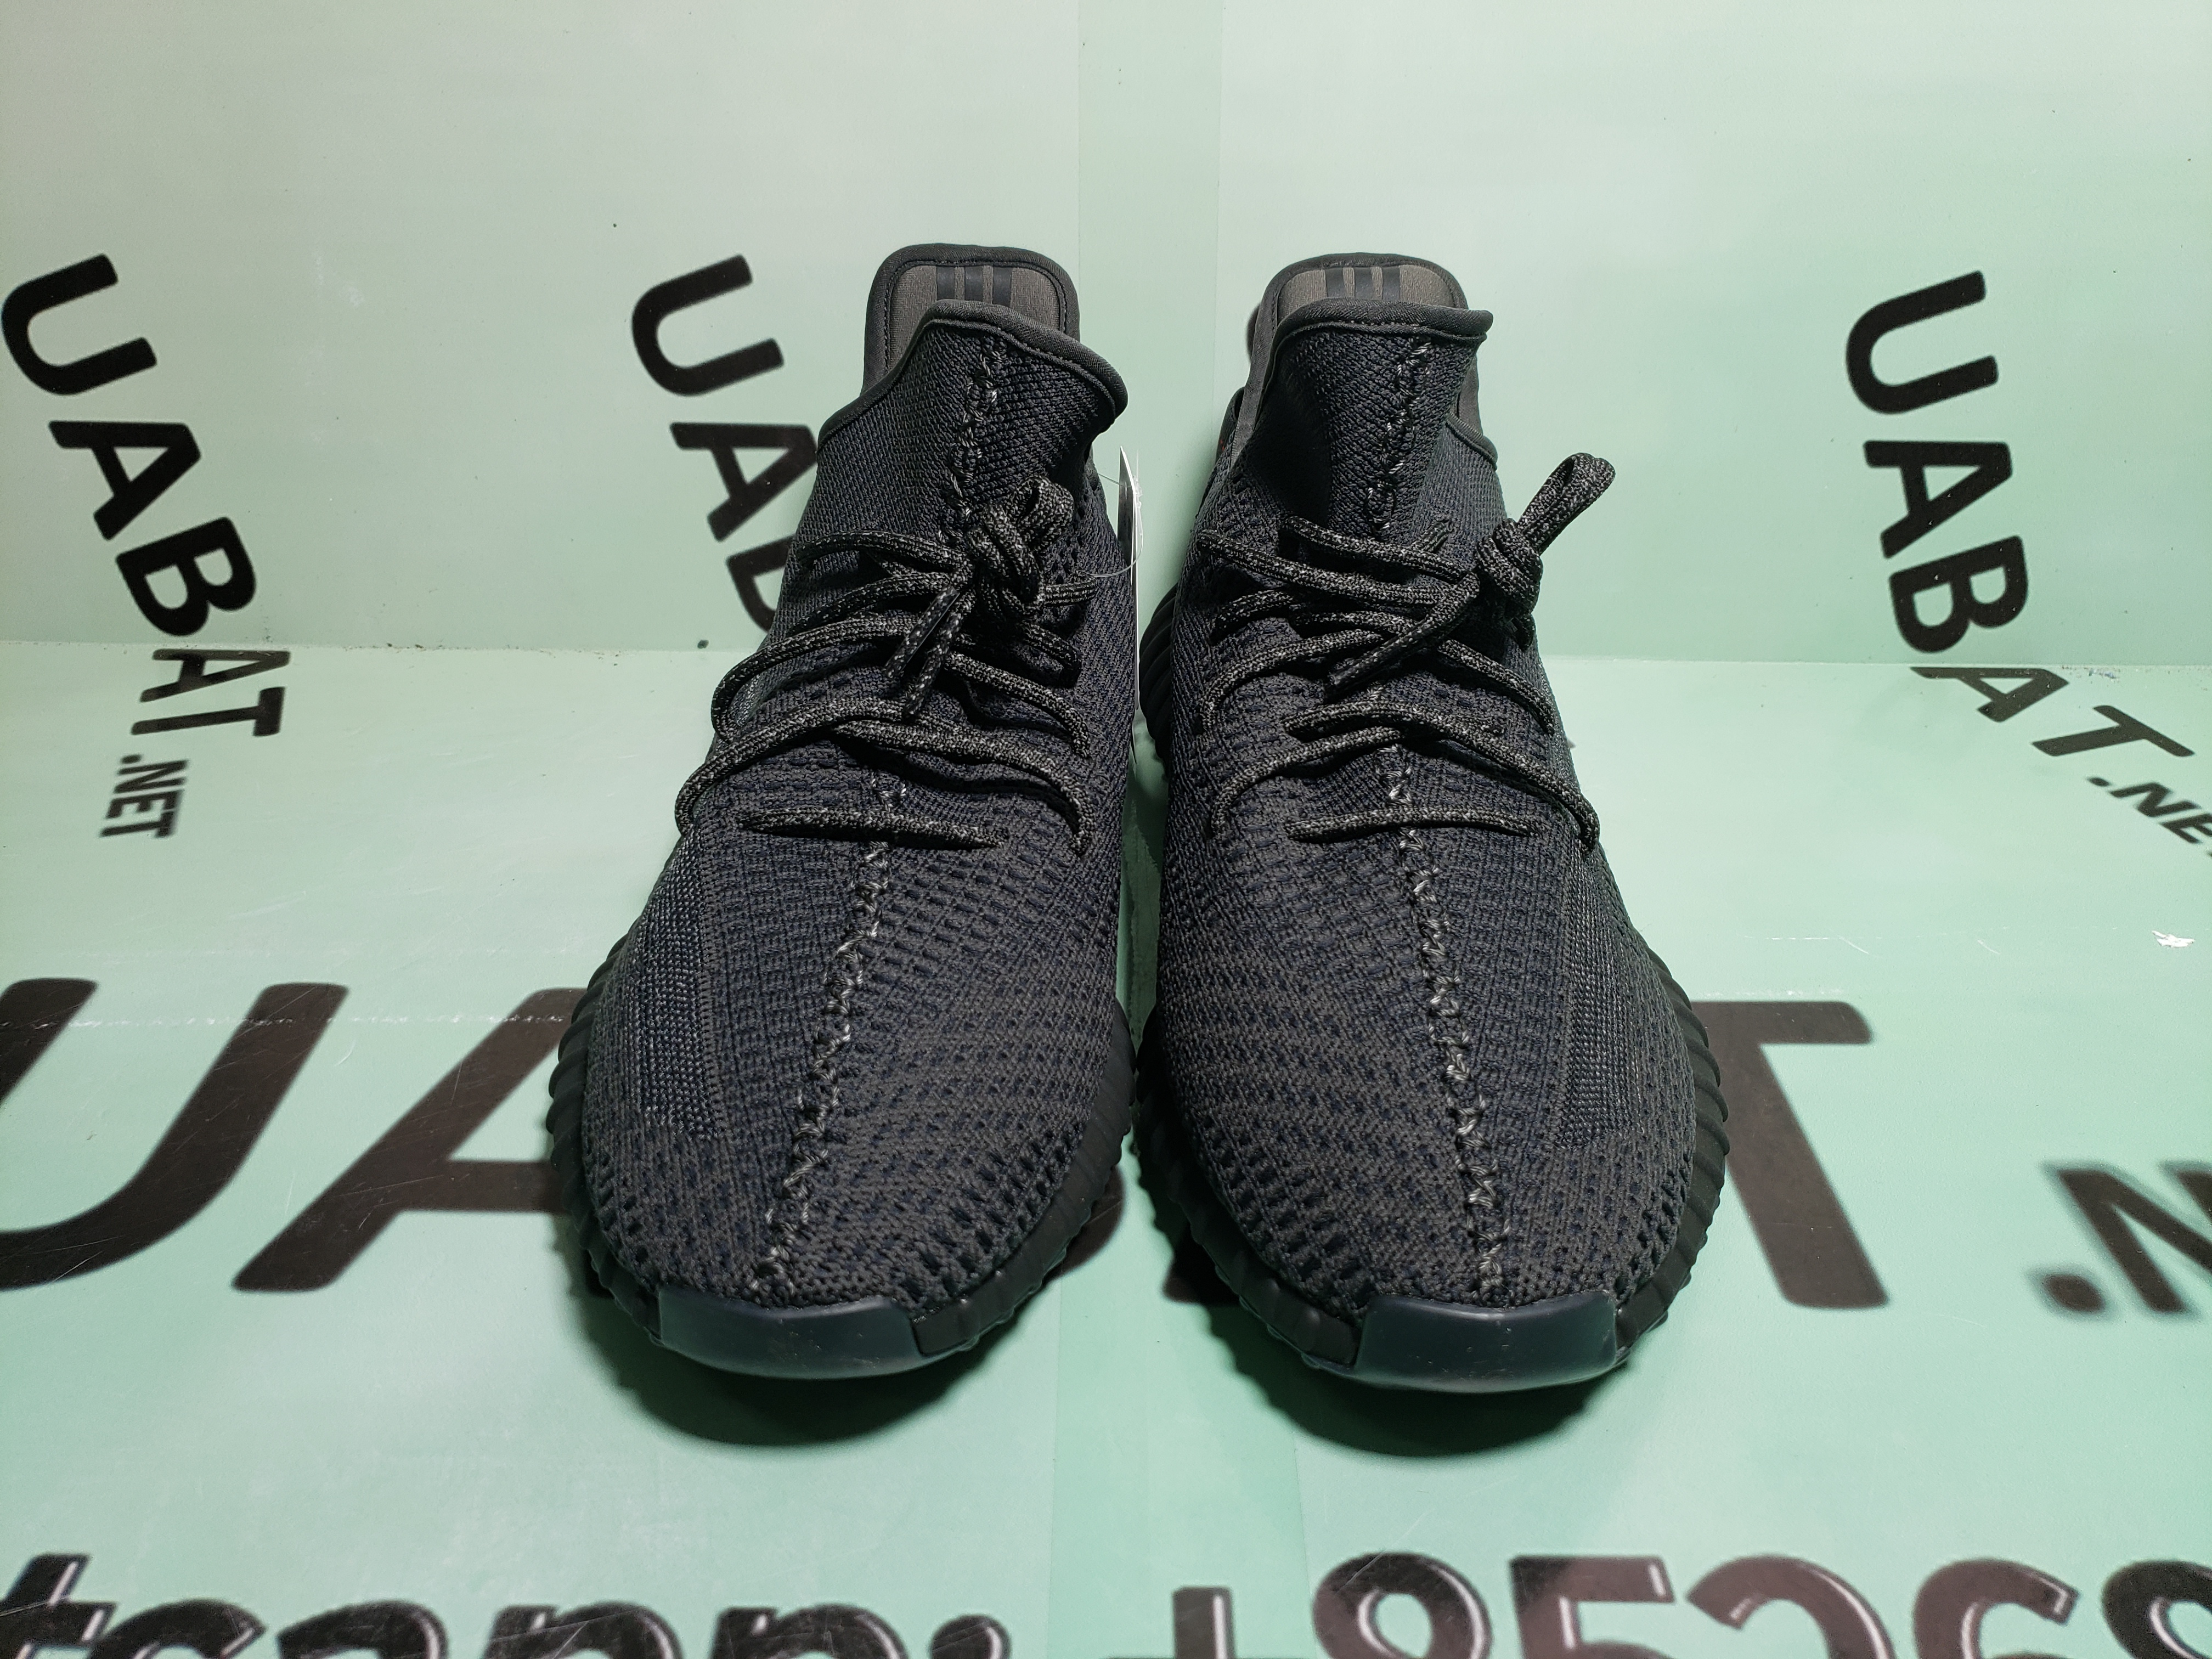 adidas samoa toddler black friday shoes 2019